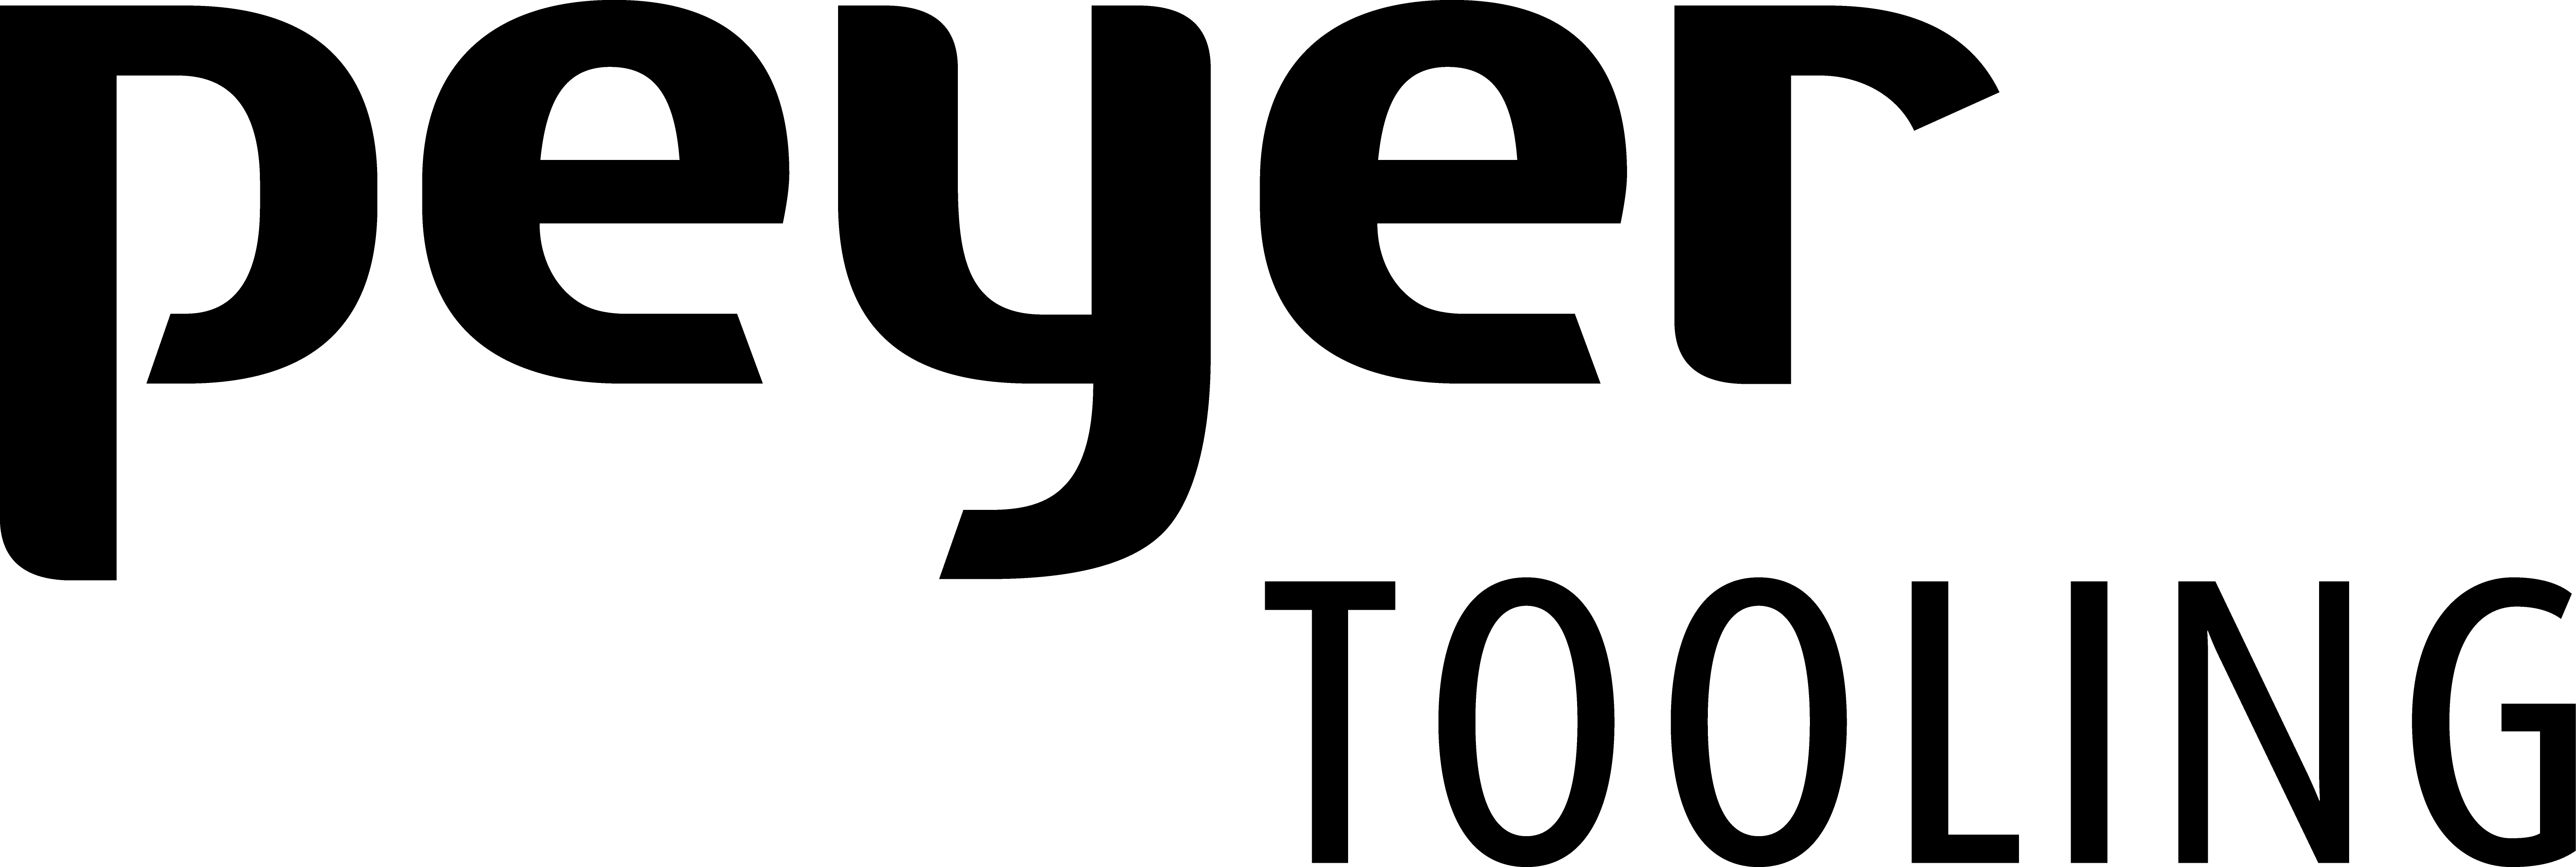 Peyer Tooling logo